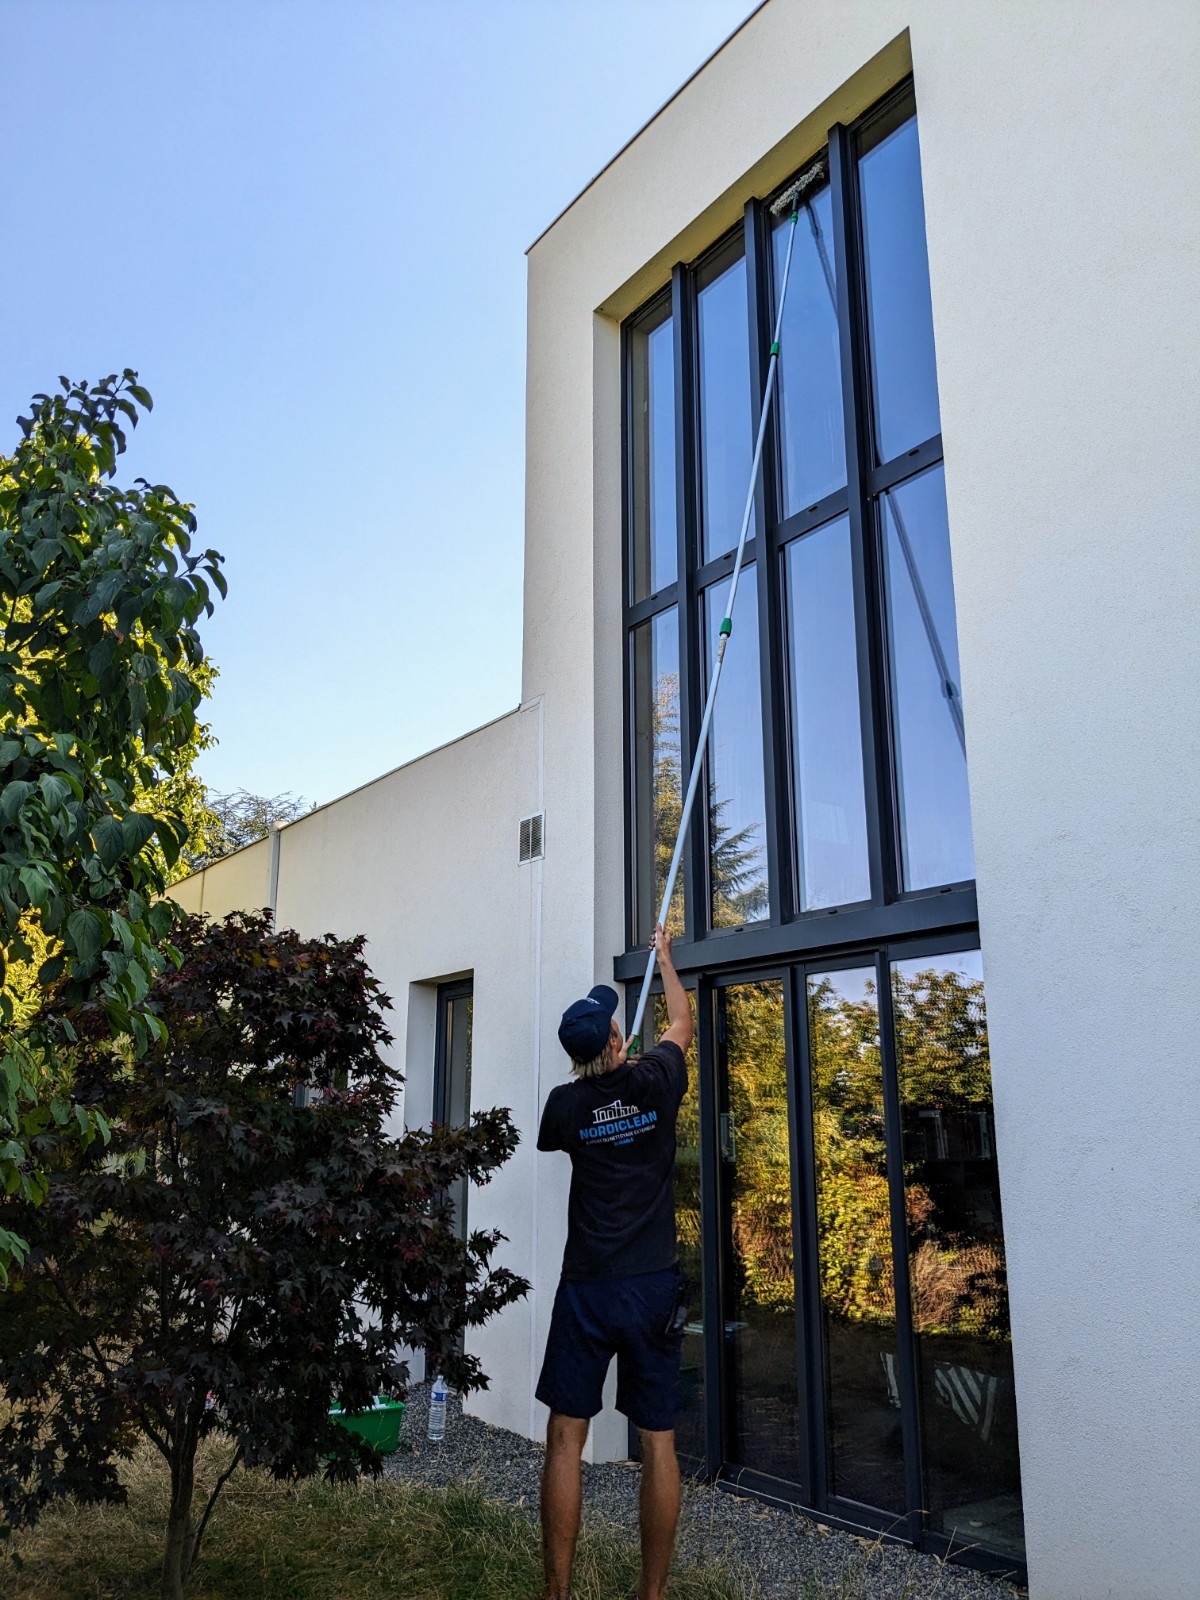 Comment nettoyer des vitres difficilement accessibles ?